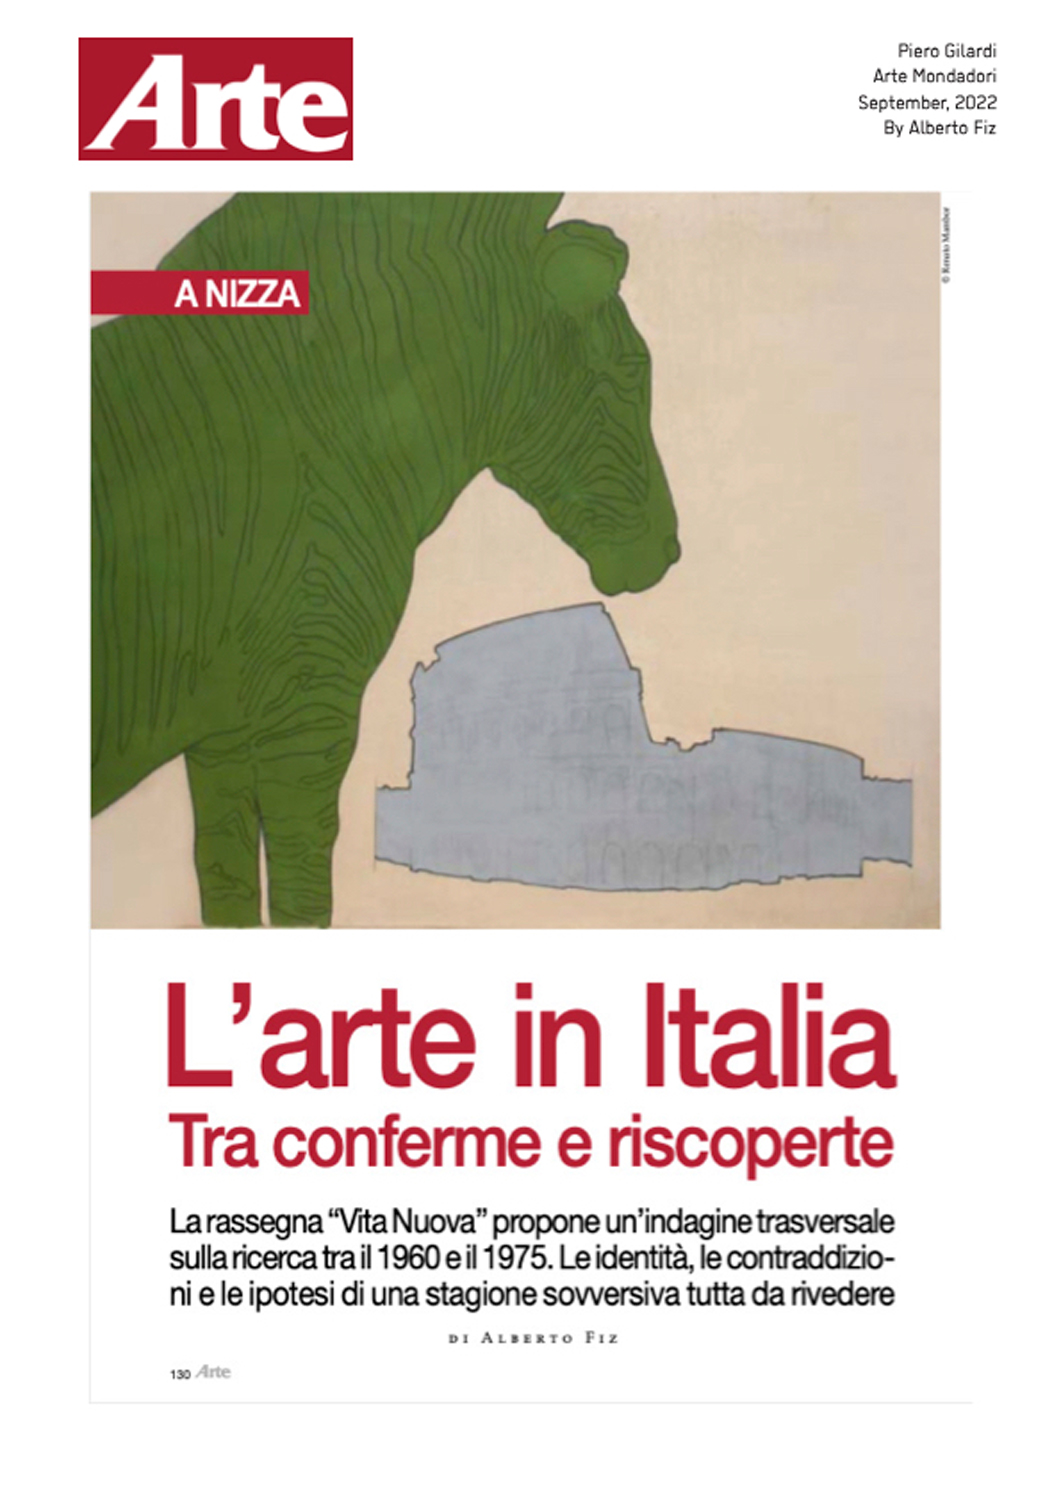 L'arte in Italia, Tra conferme e riscoperte - Arte Mondadori